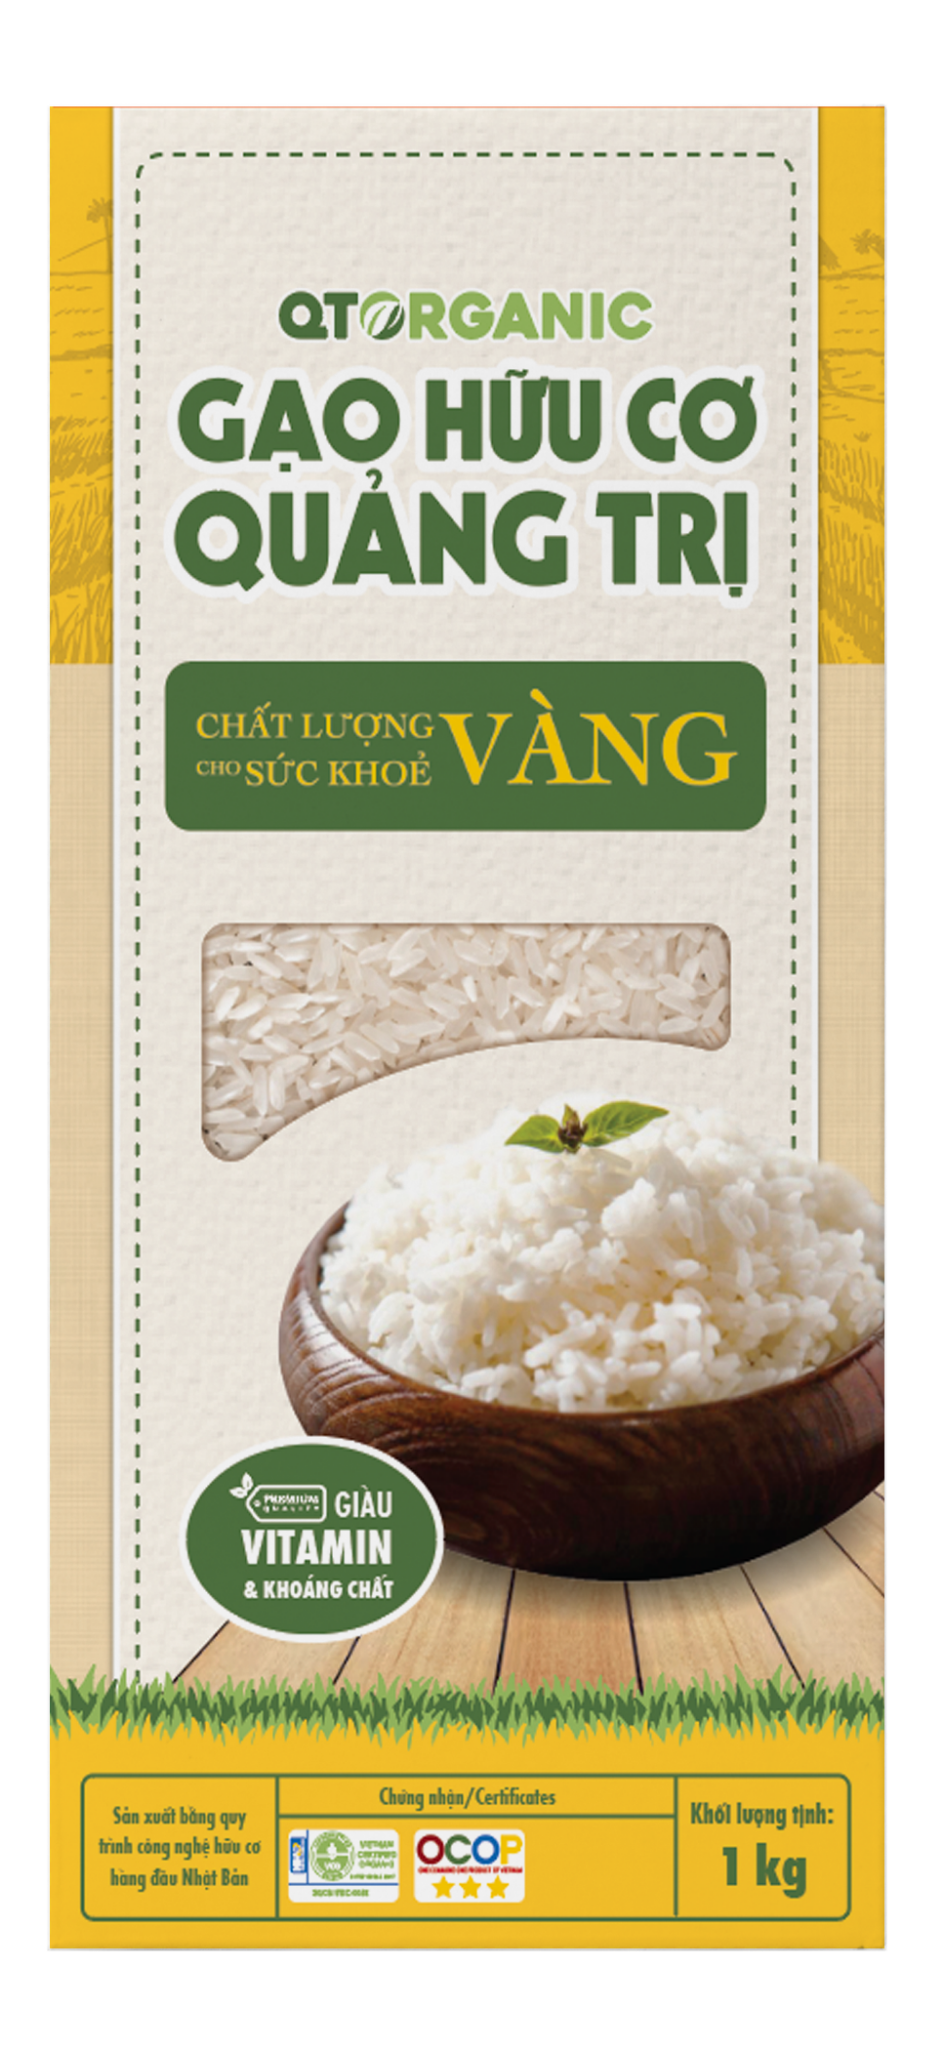 Gạo hữu cơ Quảng Trị chất lượng vàng 1kg